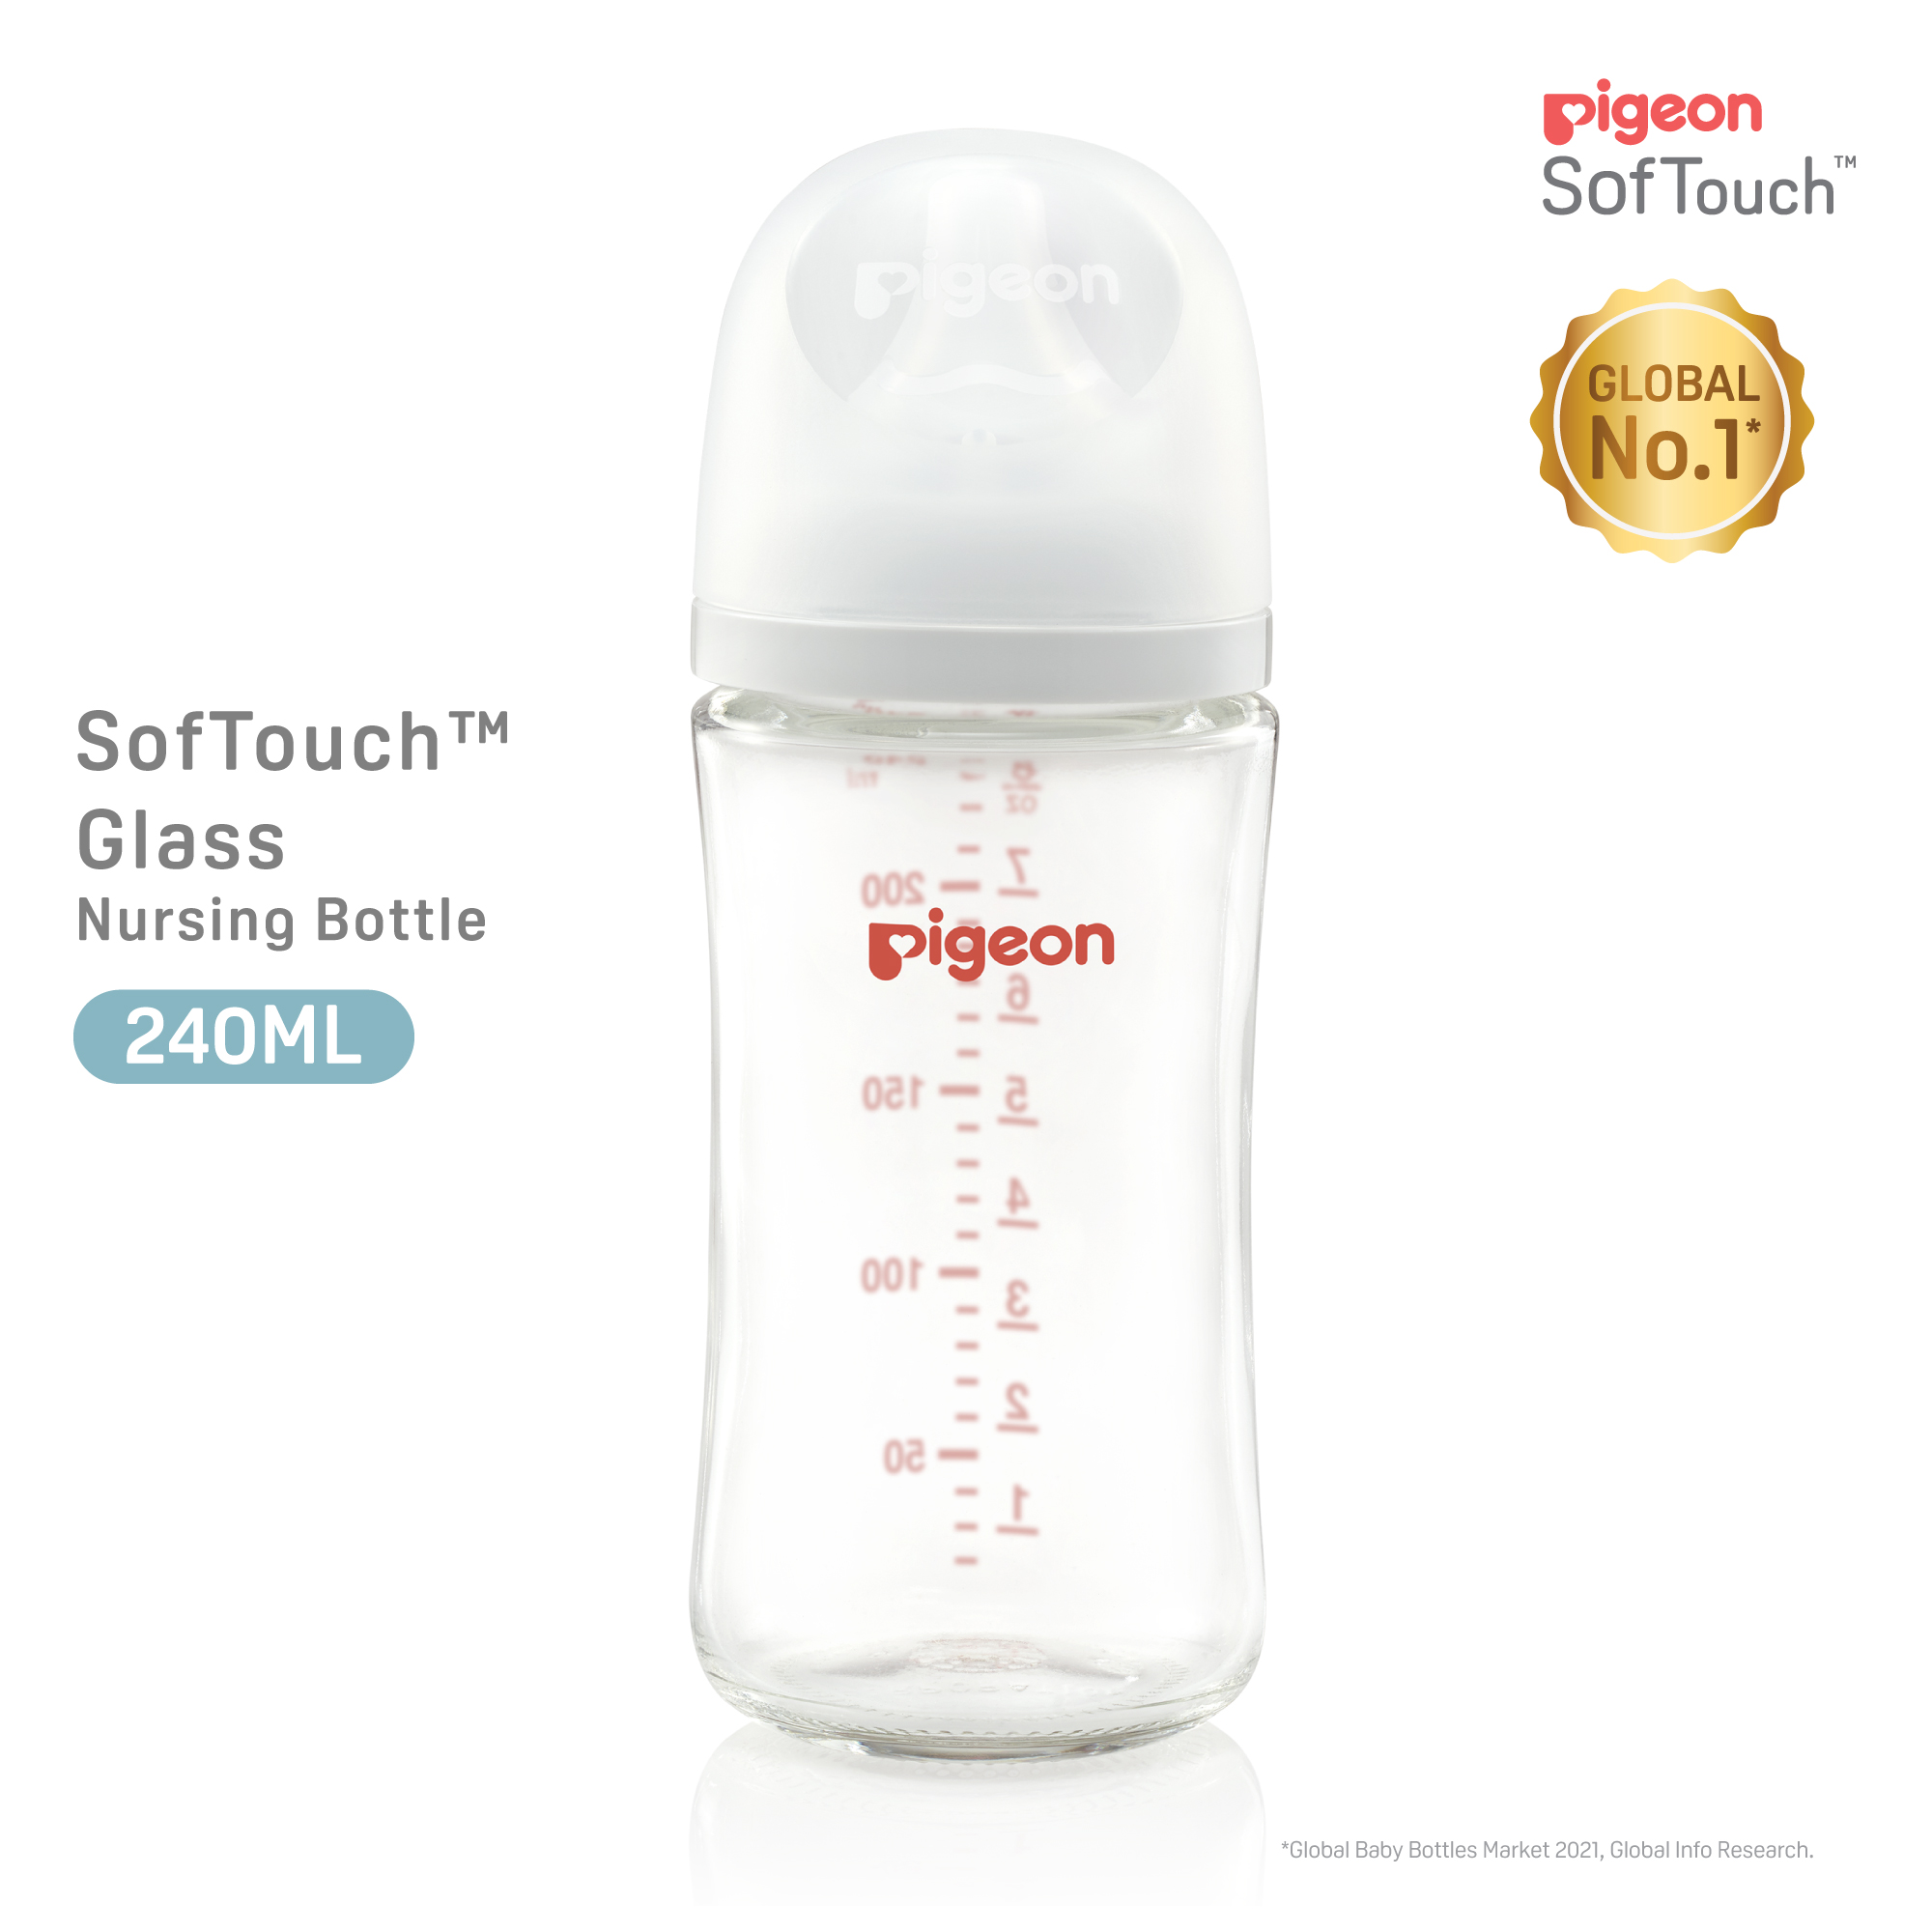 Pigeon SofTouch 3 Nursing Bottle Glass 240ml (PG-79437)